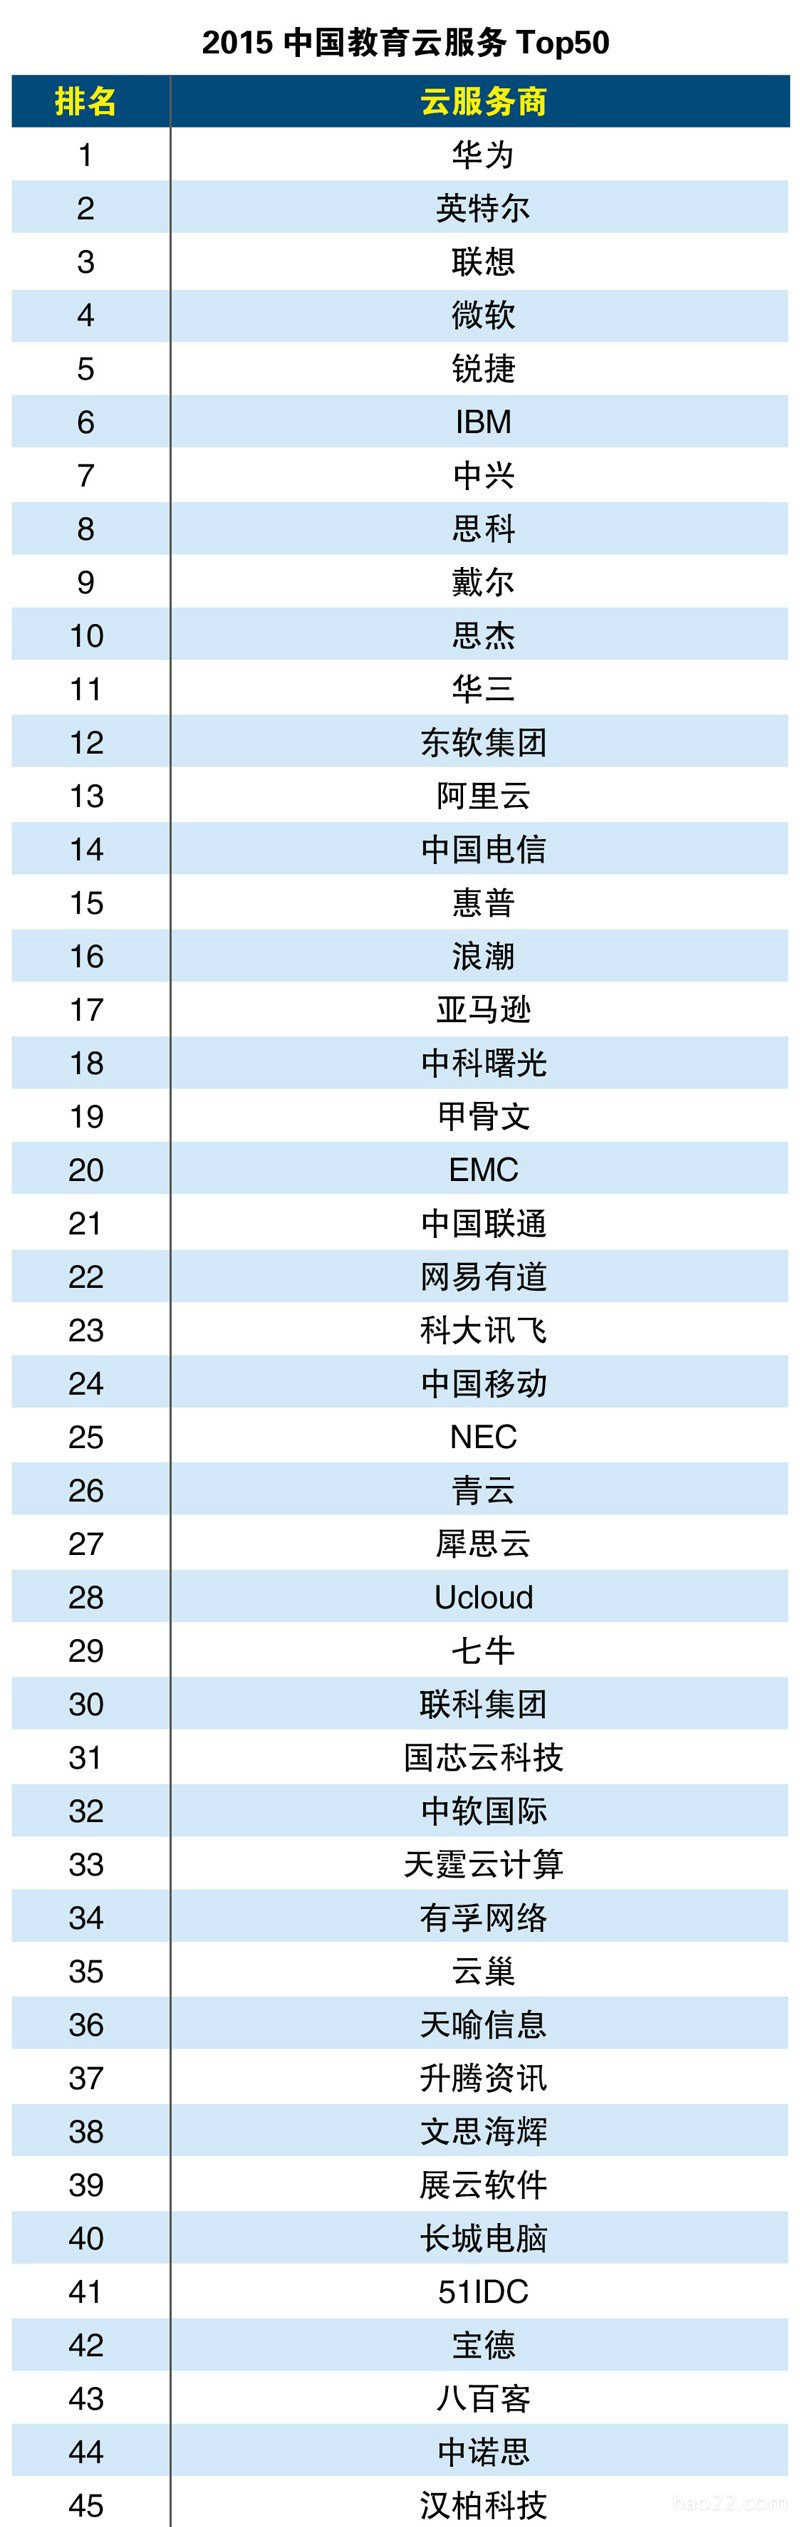 2015年中国教育云服务排行榜Top50 